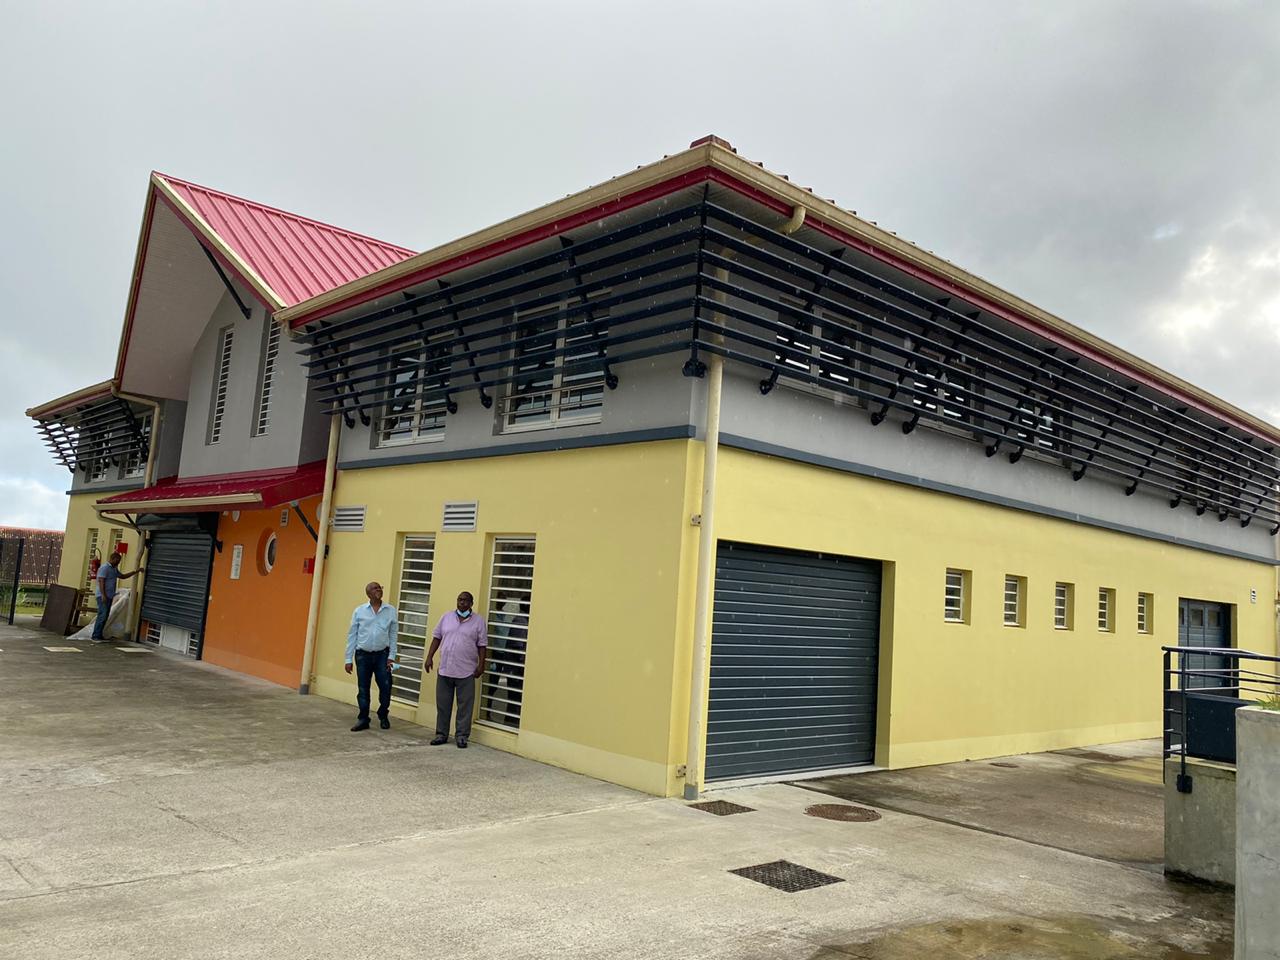     Un nouveau bâtiment bientôt inauguré à l'ESAT de Morne-Rouge

